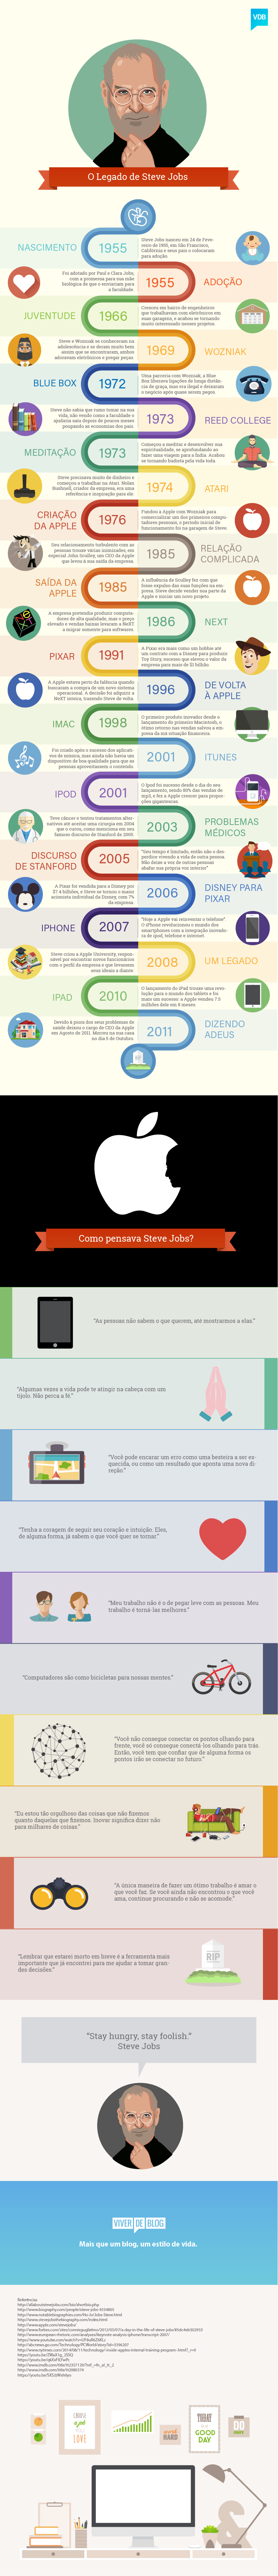 infografico-steve-jobs-9